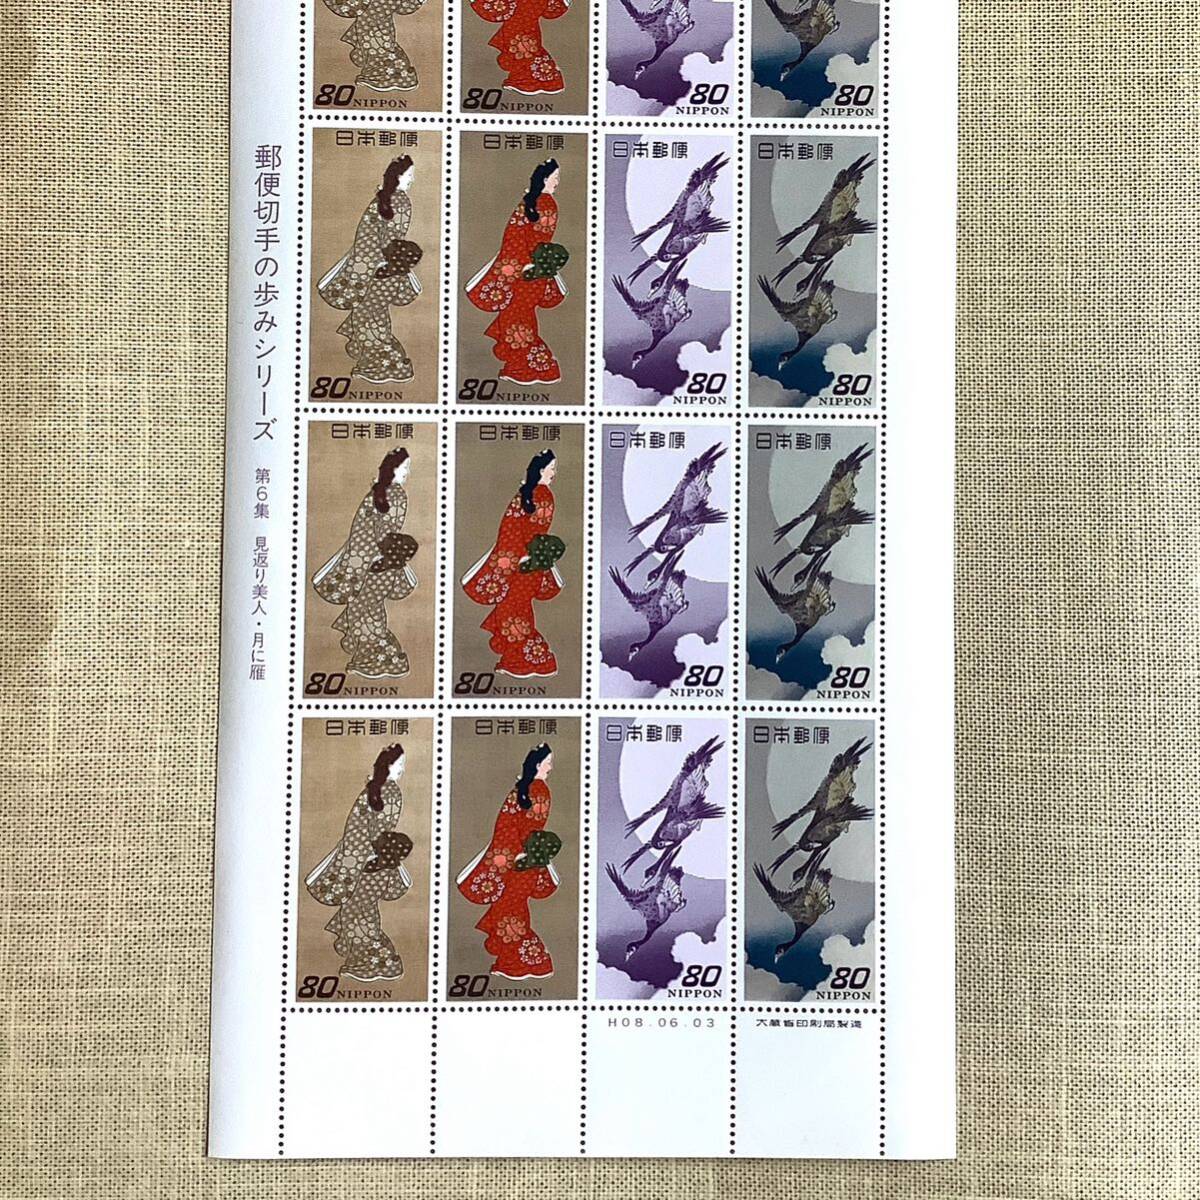 送料込み 見返り美人・月に雁 1シート 郵便切手の歩みシリーズ第6集 美品未使用の画像2